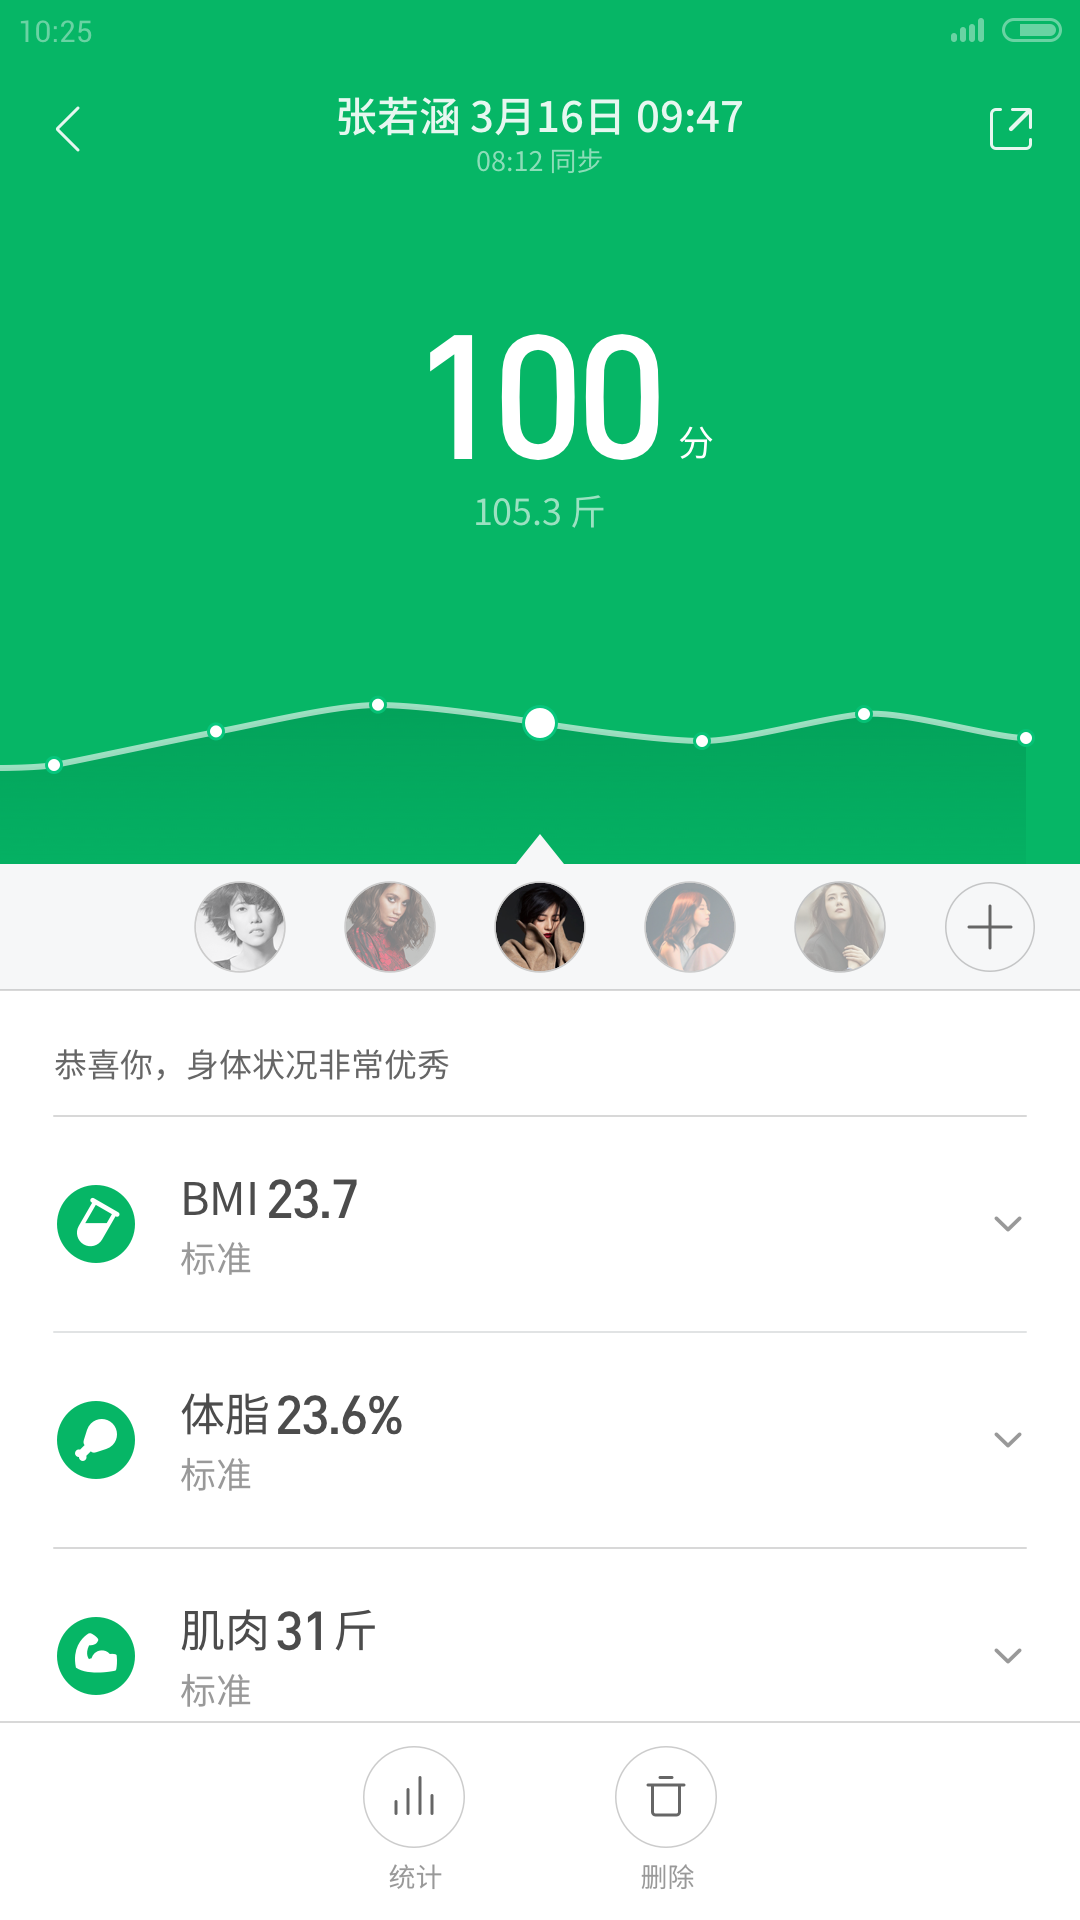 小米运动健康 App 截图 058 - UI Notes